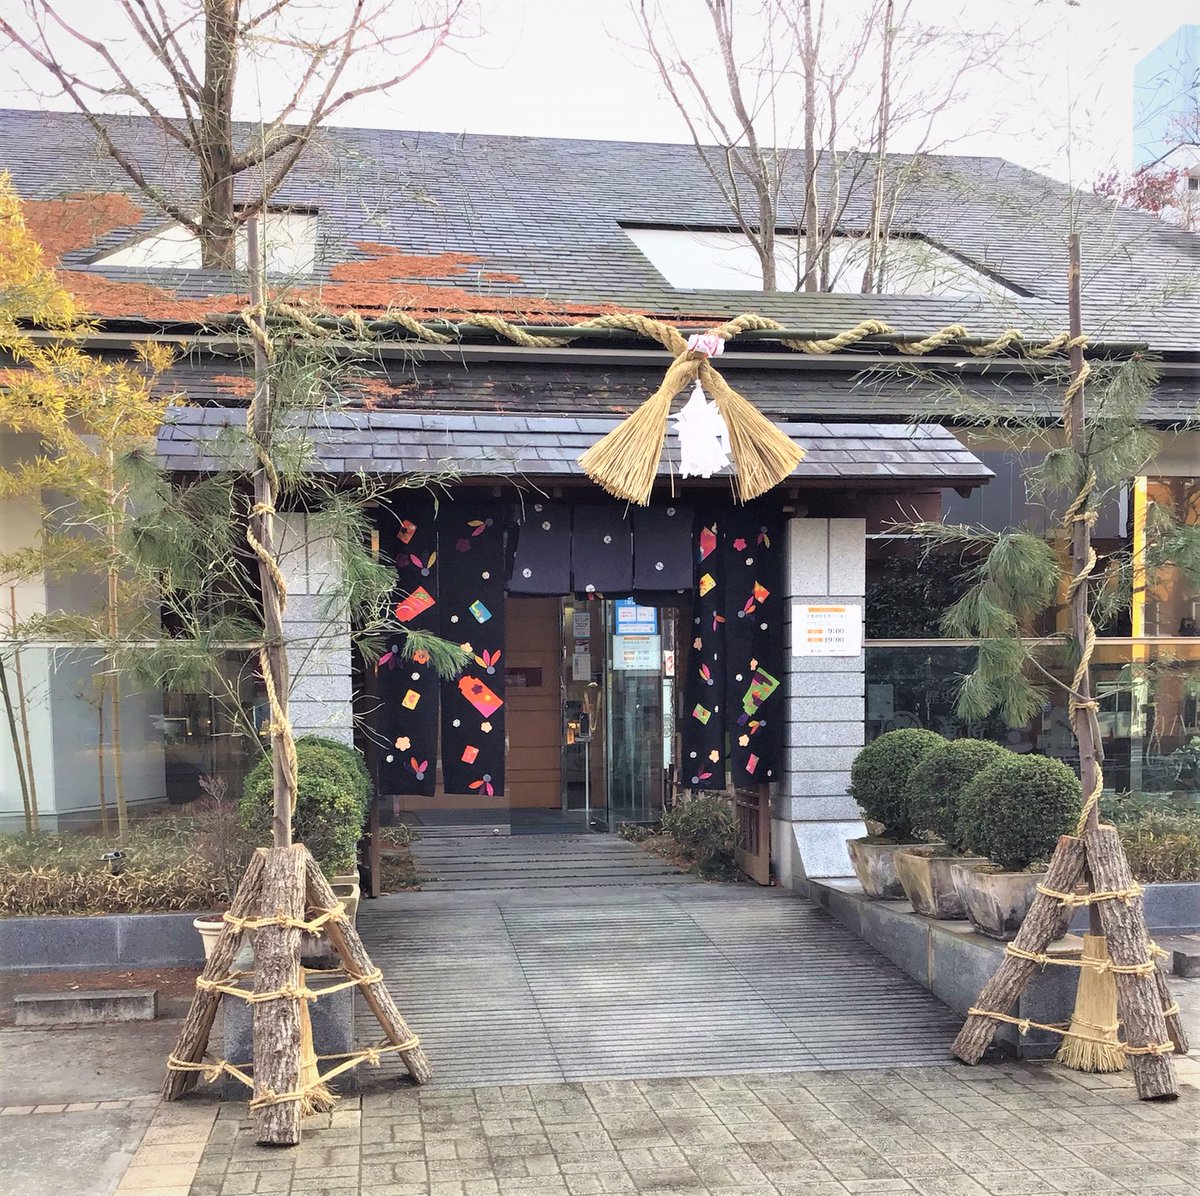 「仙台門松」という、仙台の伝統的な門松が飾られているみたい！